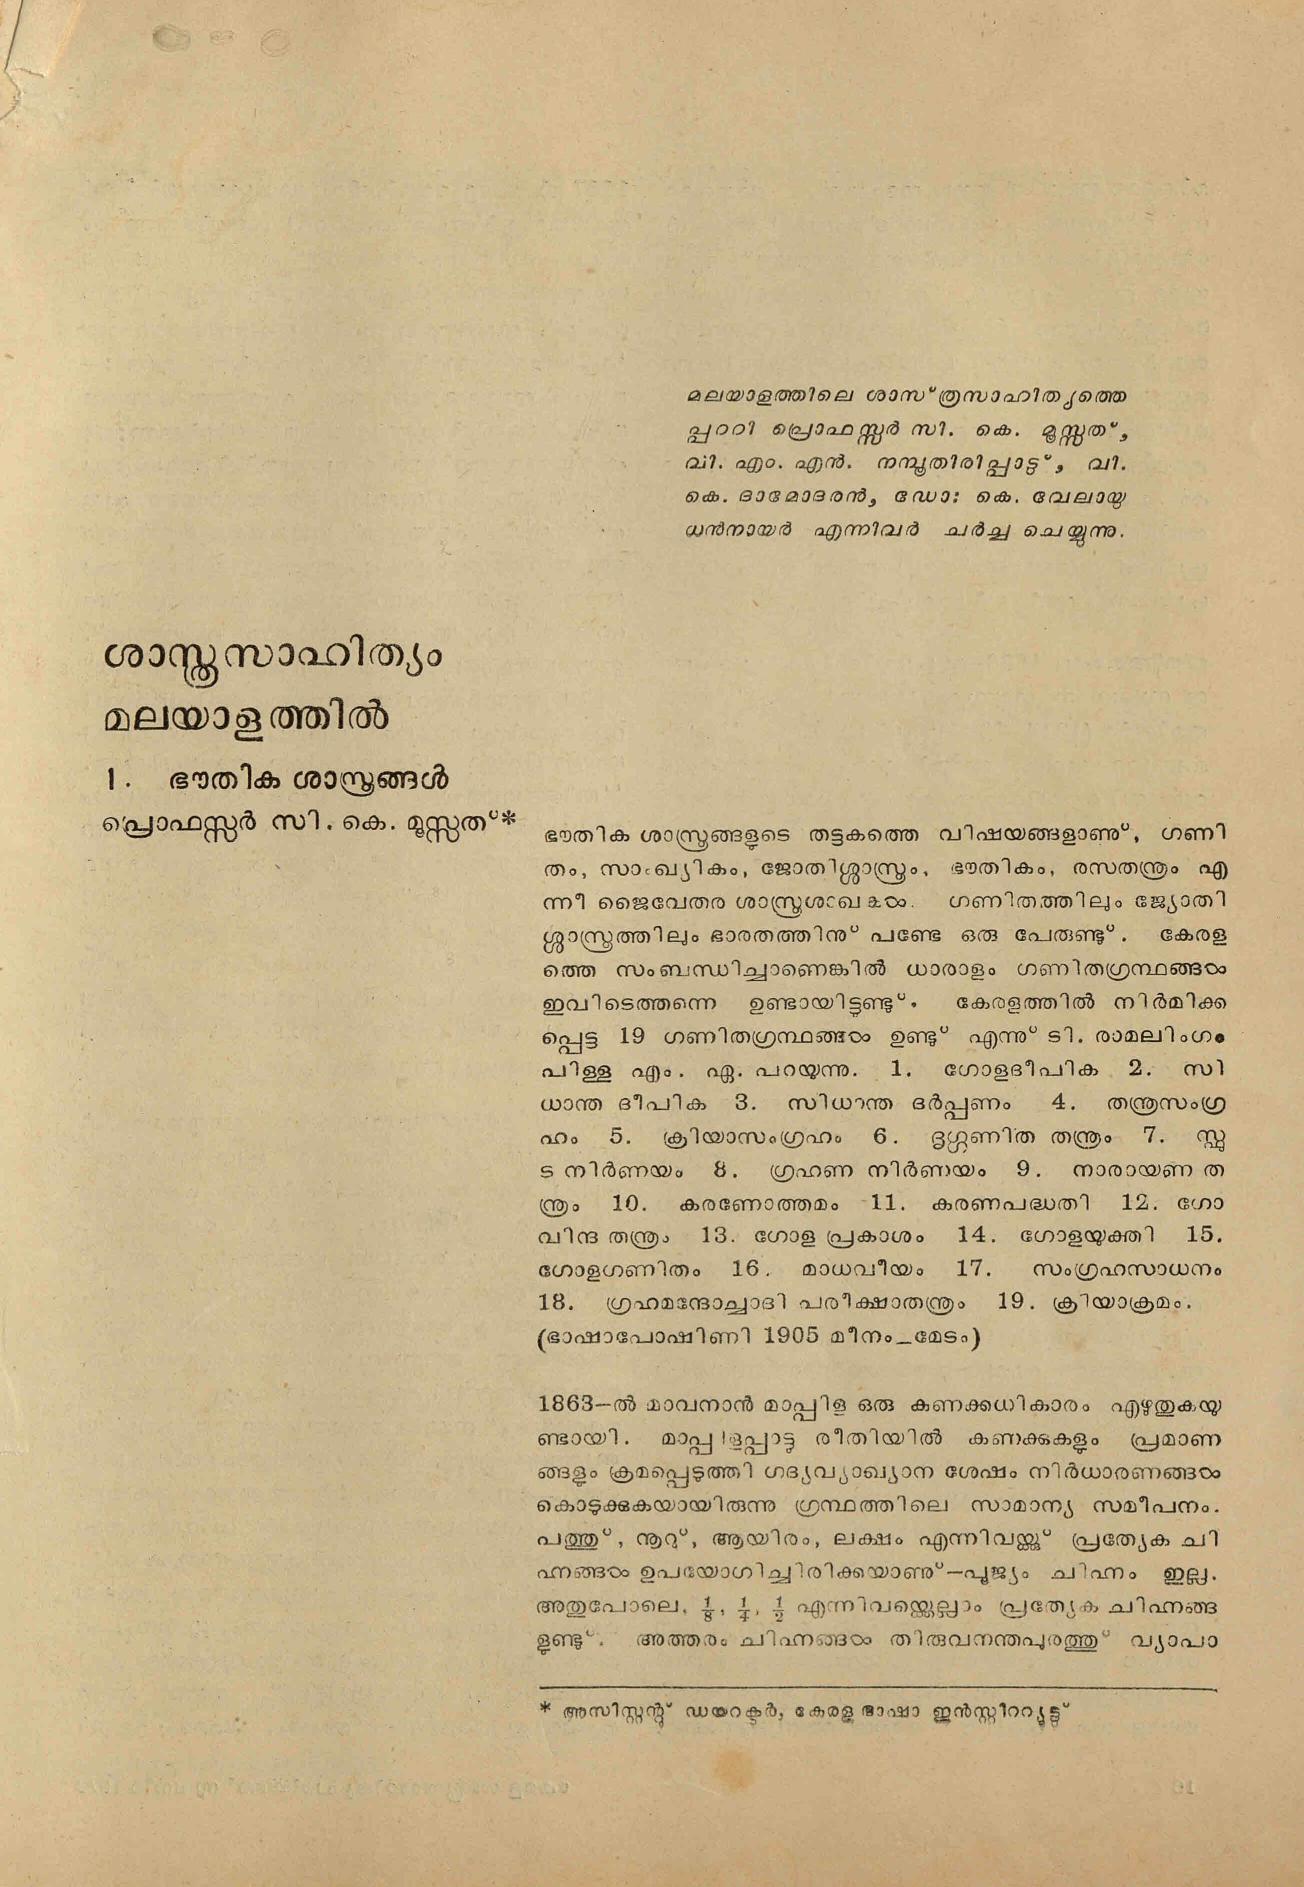  1975 - ശാസ്ത്ര സാഹിത്യം മലയാളത്തിൽ - സി. കെ. മൂസ്സത്